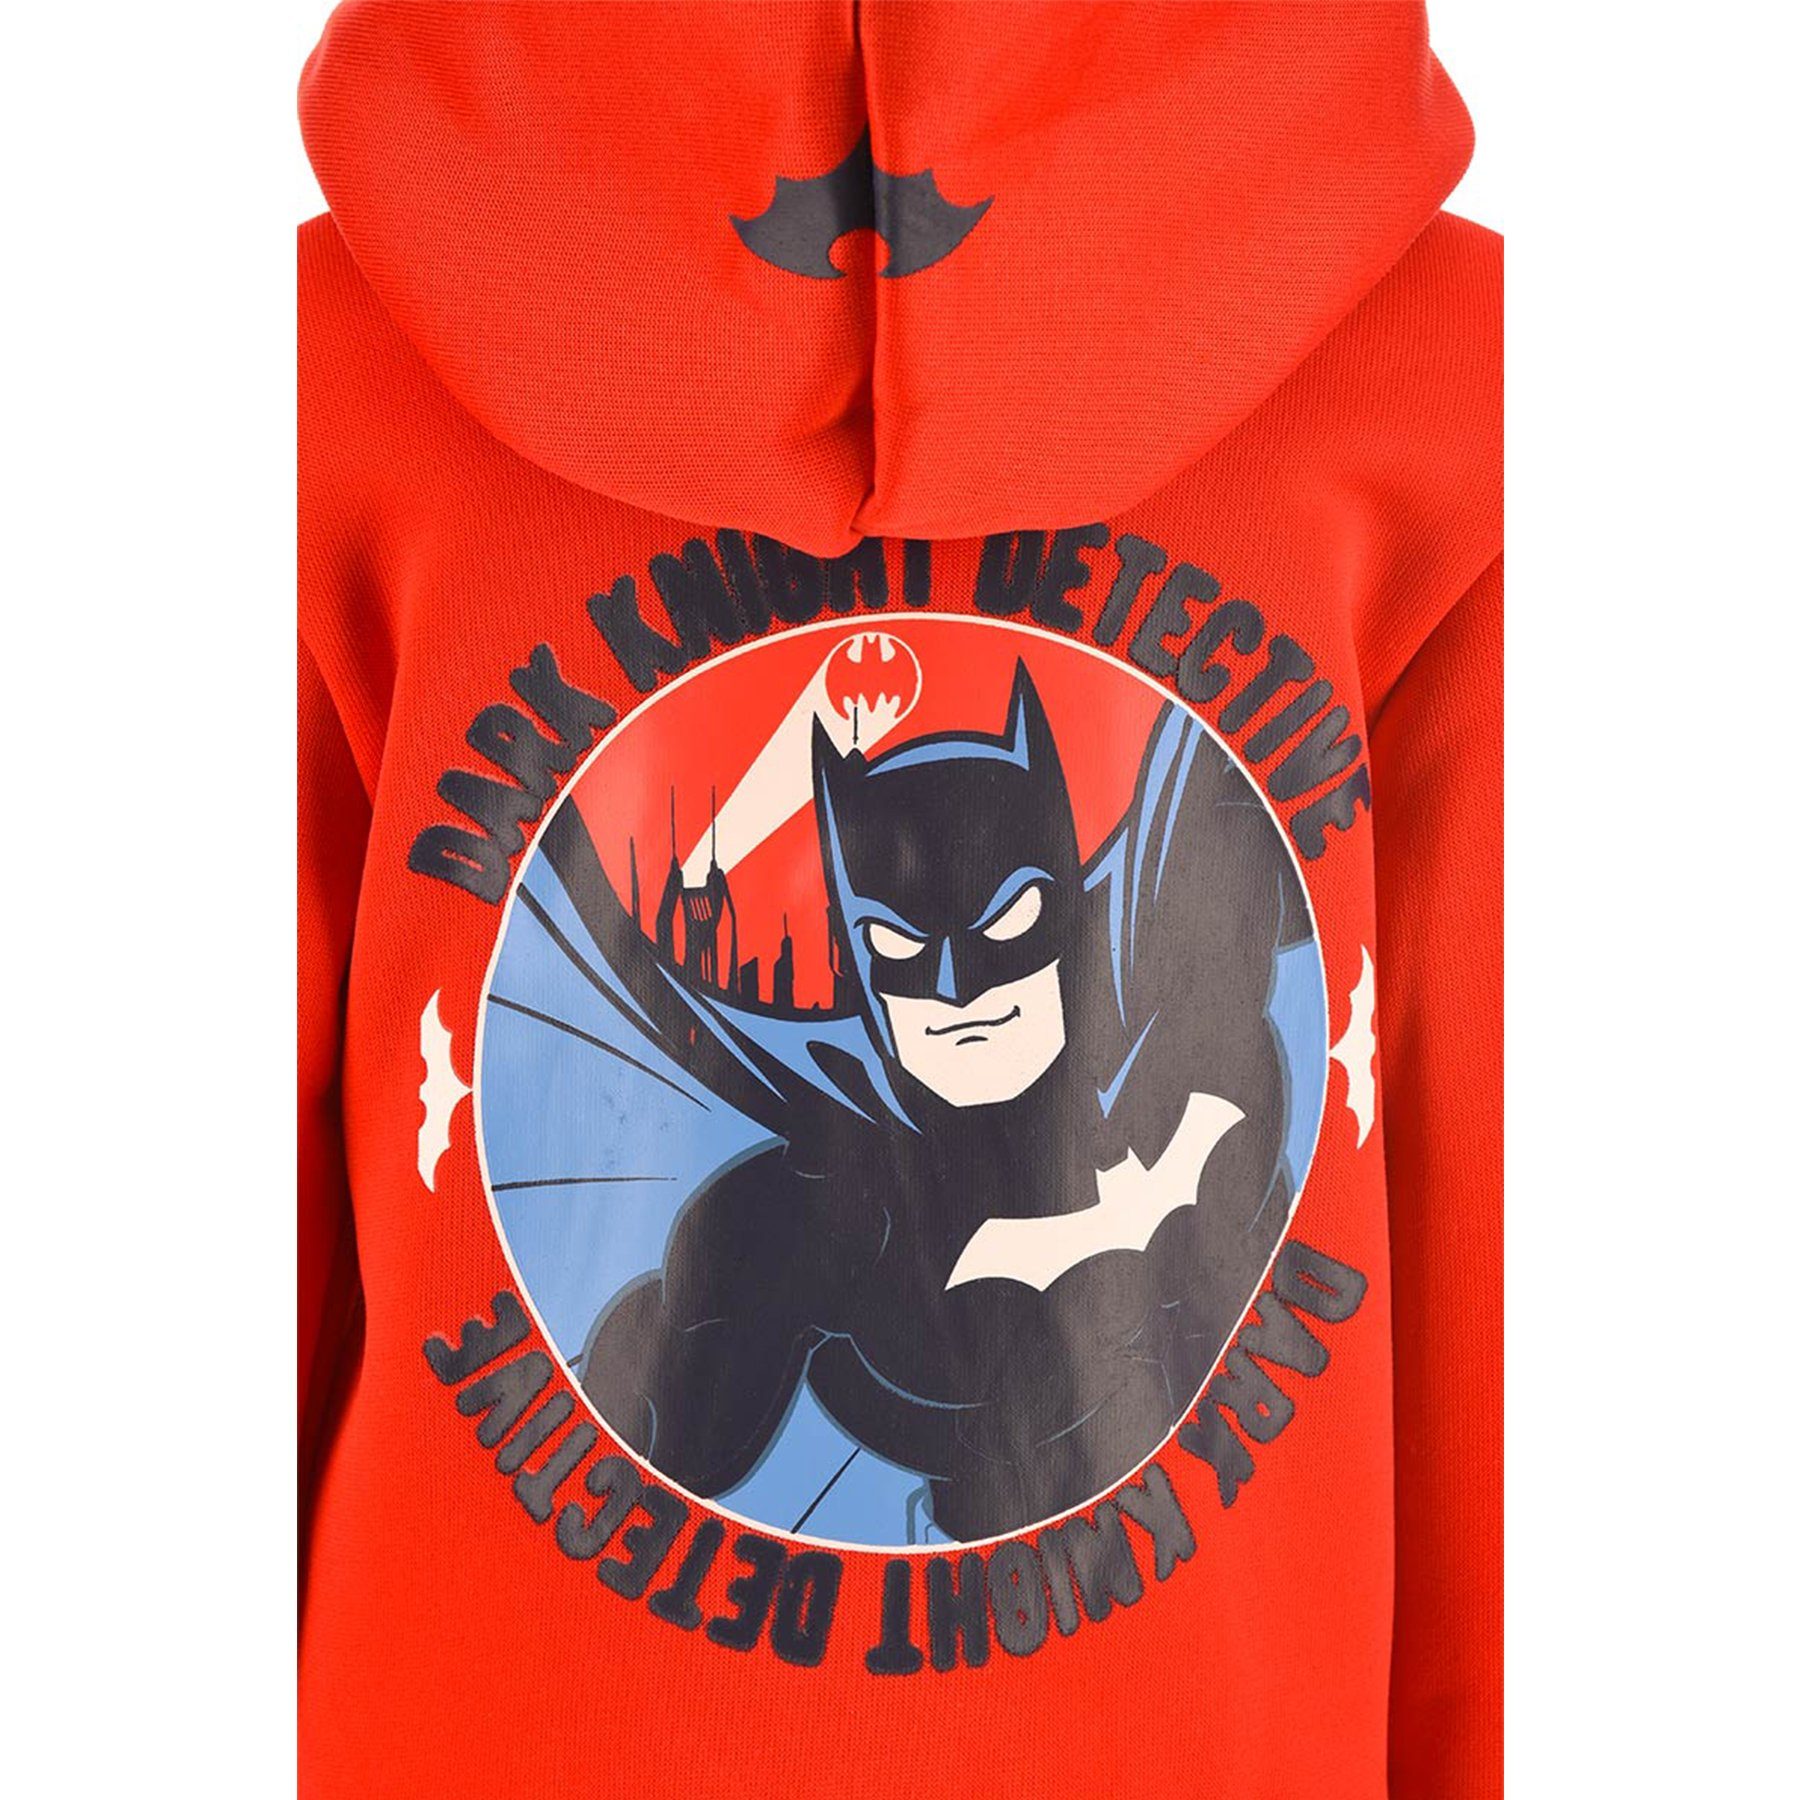 Batman Kapuzensweatjacke Dirk Knight Sweatjacke Kapuzenjacke Reißverschluss Hoodie Pullover-Jacke Kapuze Rot